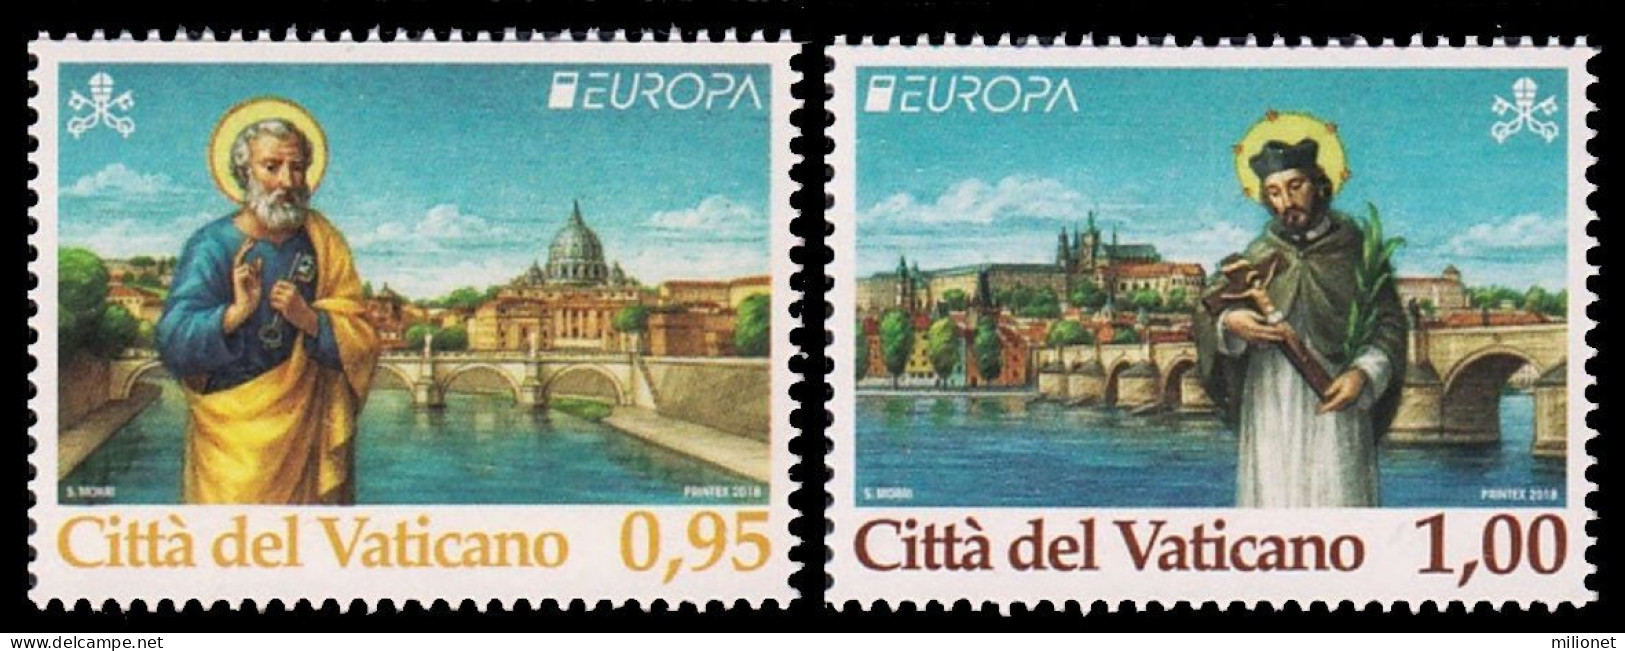 SALE!!! Vatican City Vaticano Vatikan 2018 EUROPA CEPT BRIDGES 2 Stamps Set MNH ** - 2018